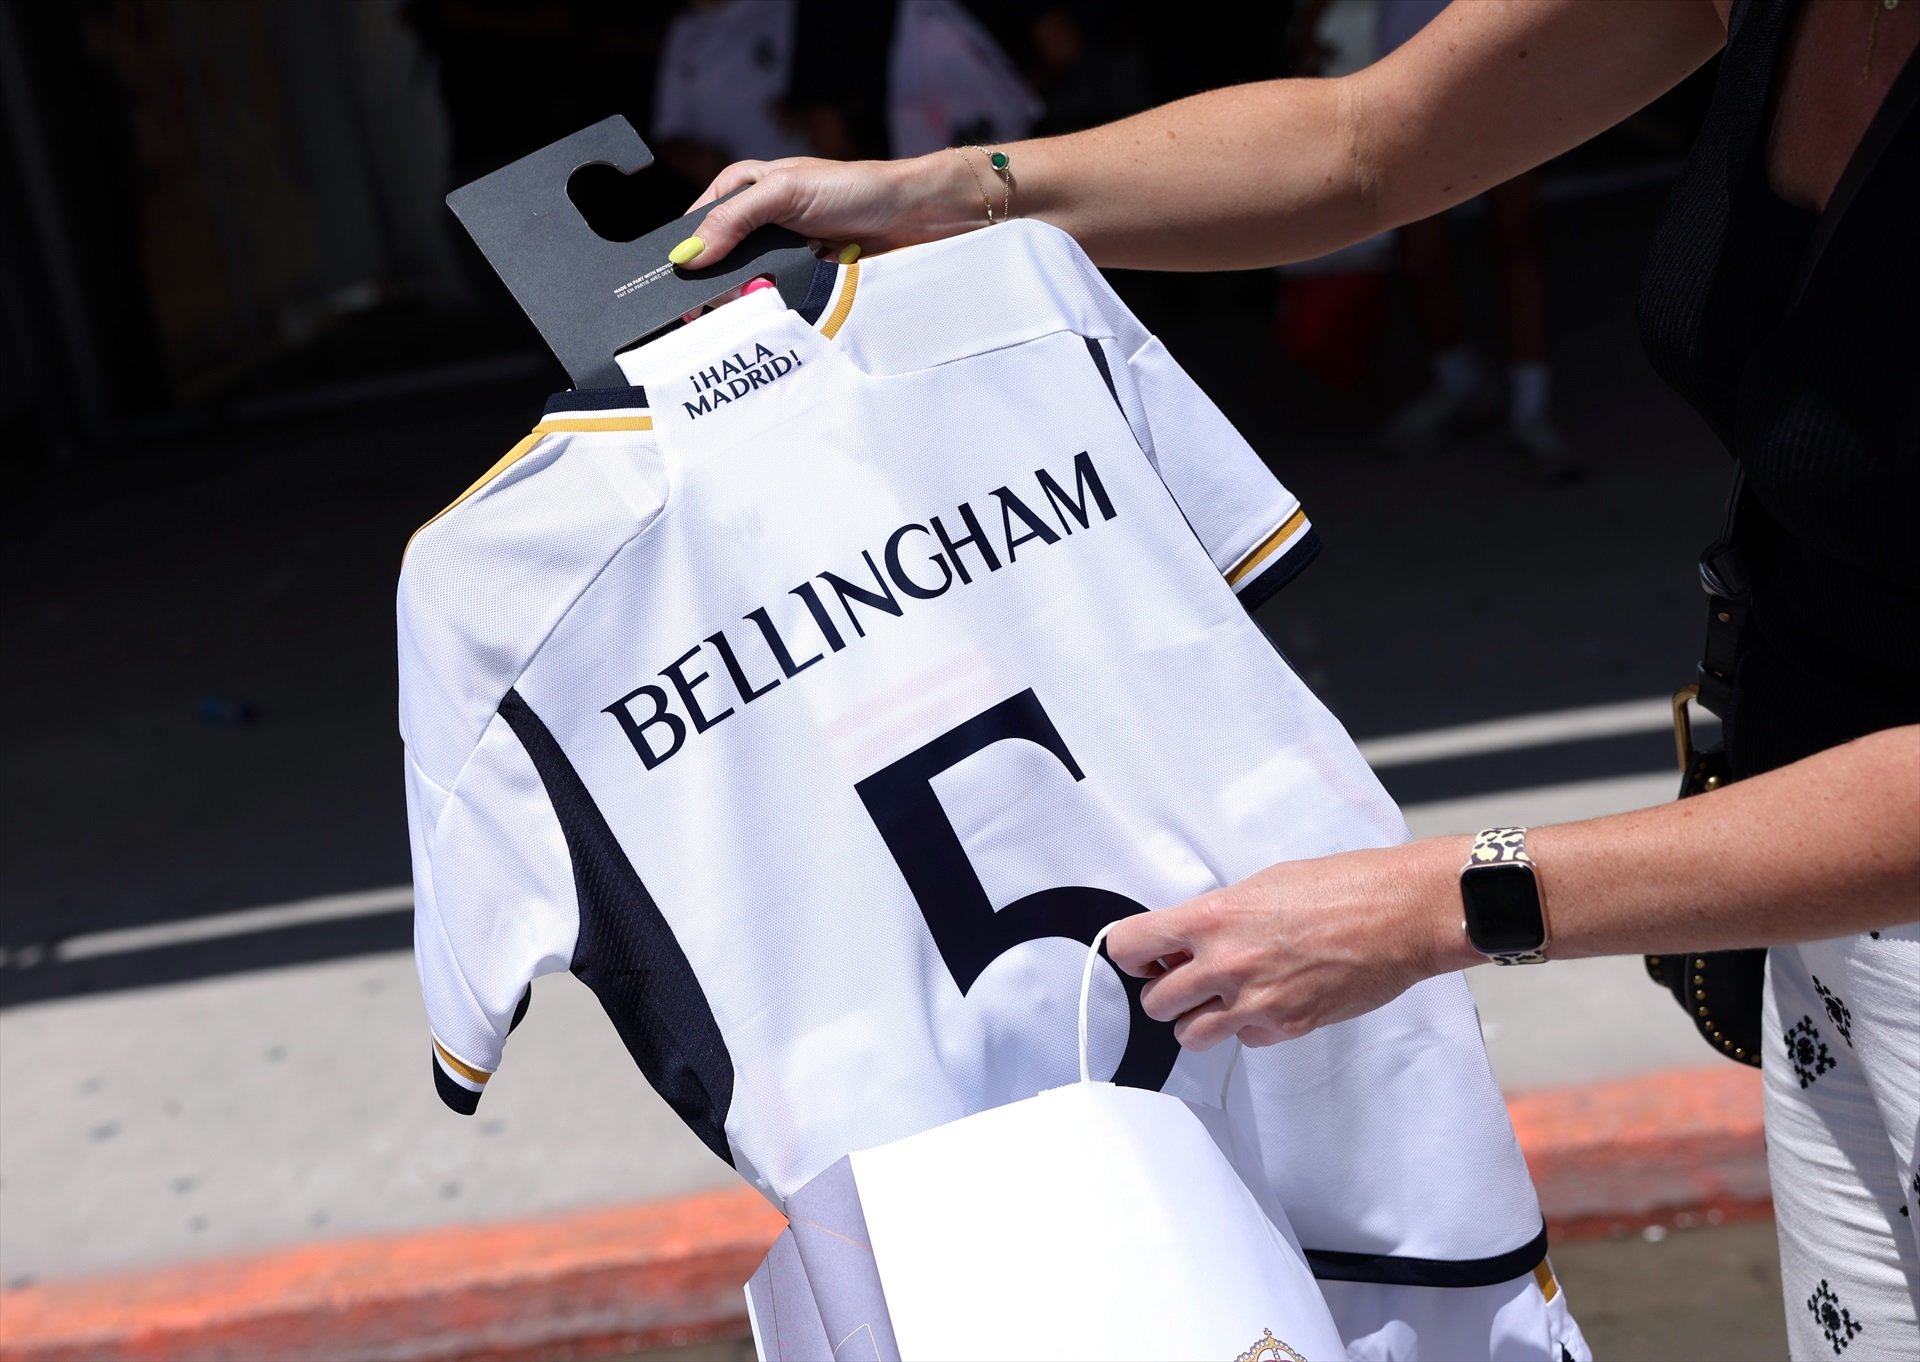 Bellingham deixa la primera víctima al Reial Madrid, estudia activar la clàusula de sortida